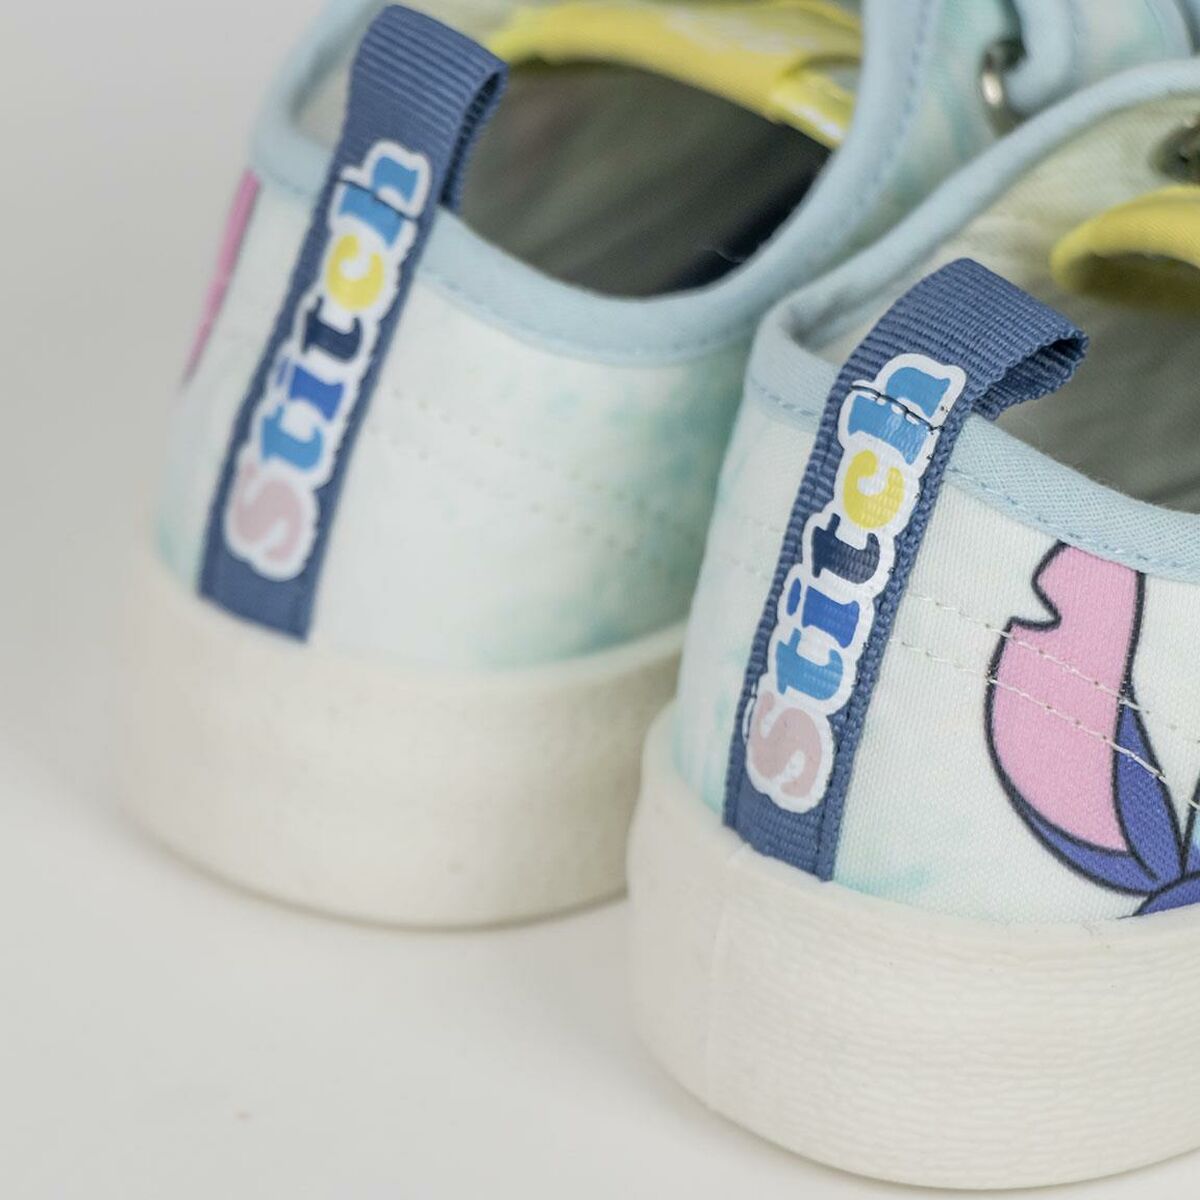 Chaussures de Sport pour Enfants Stitch Bleu clair